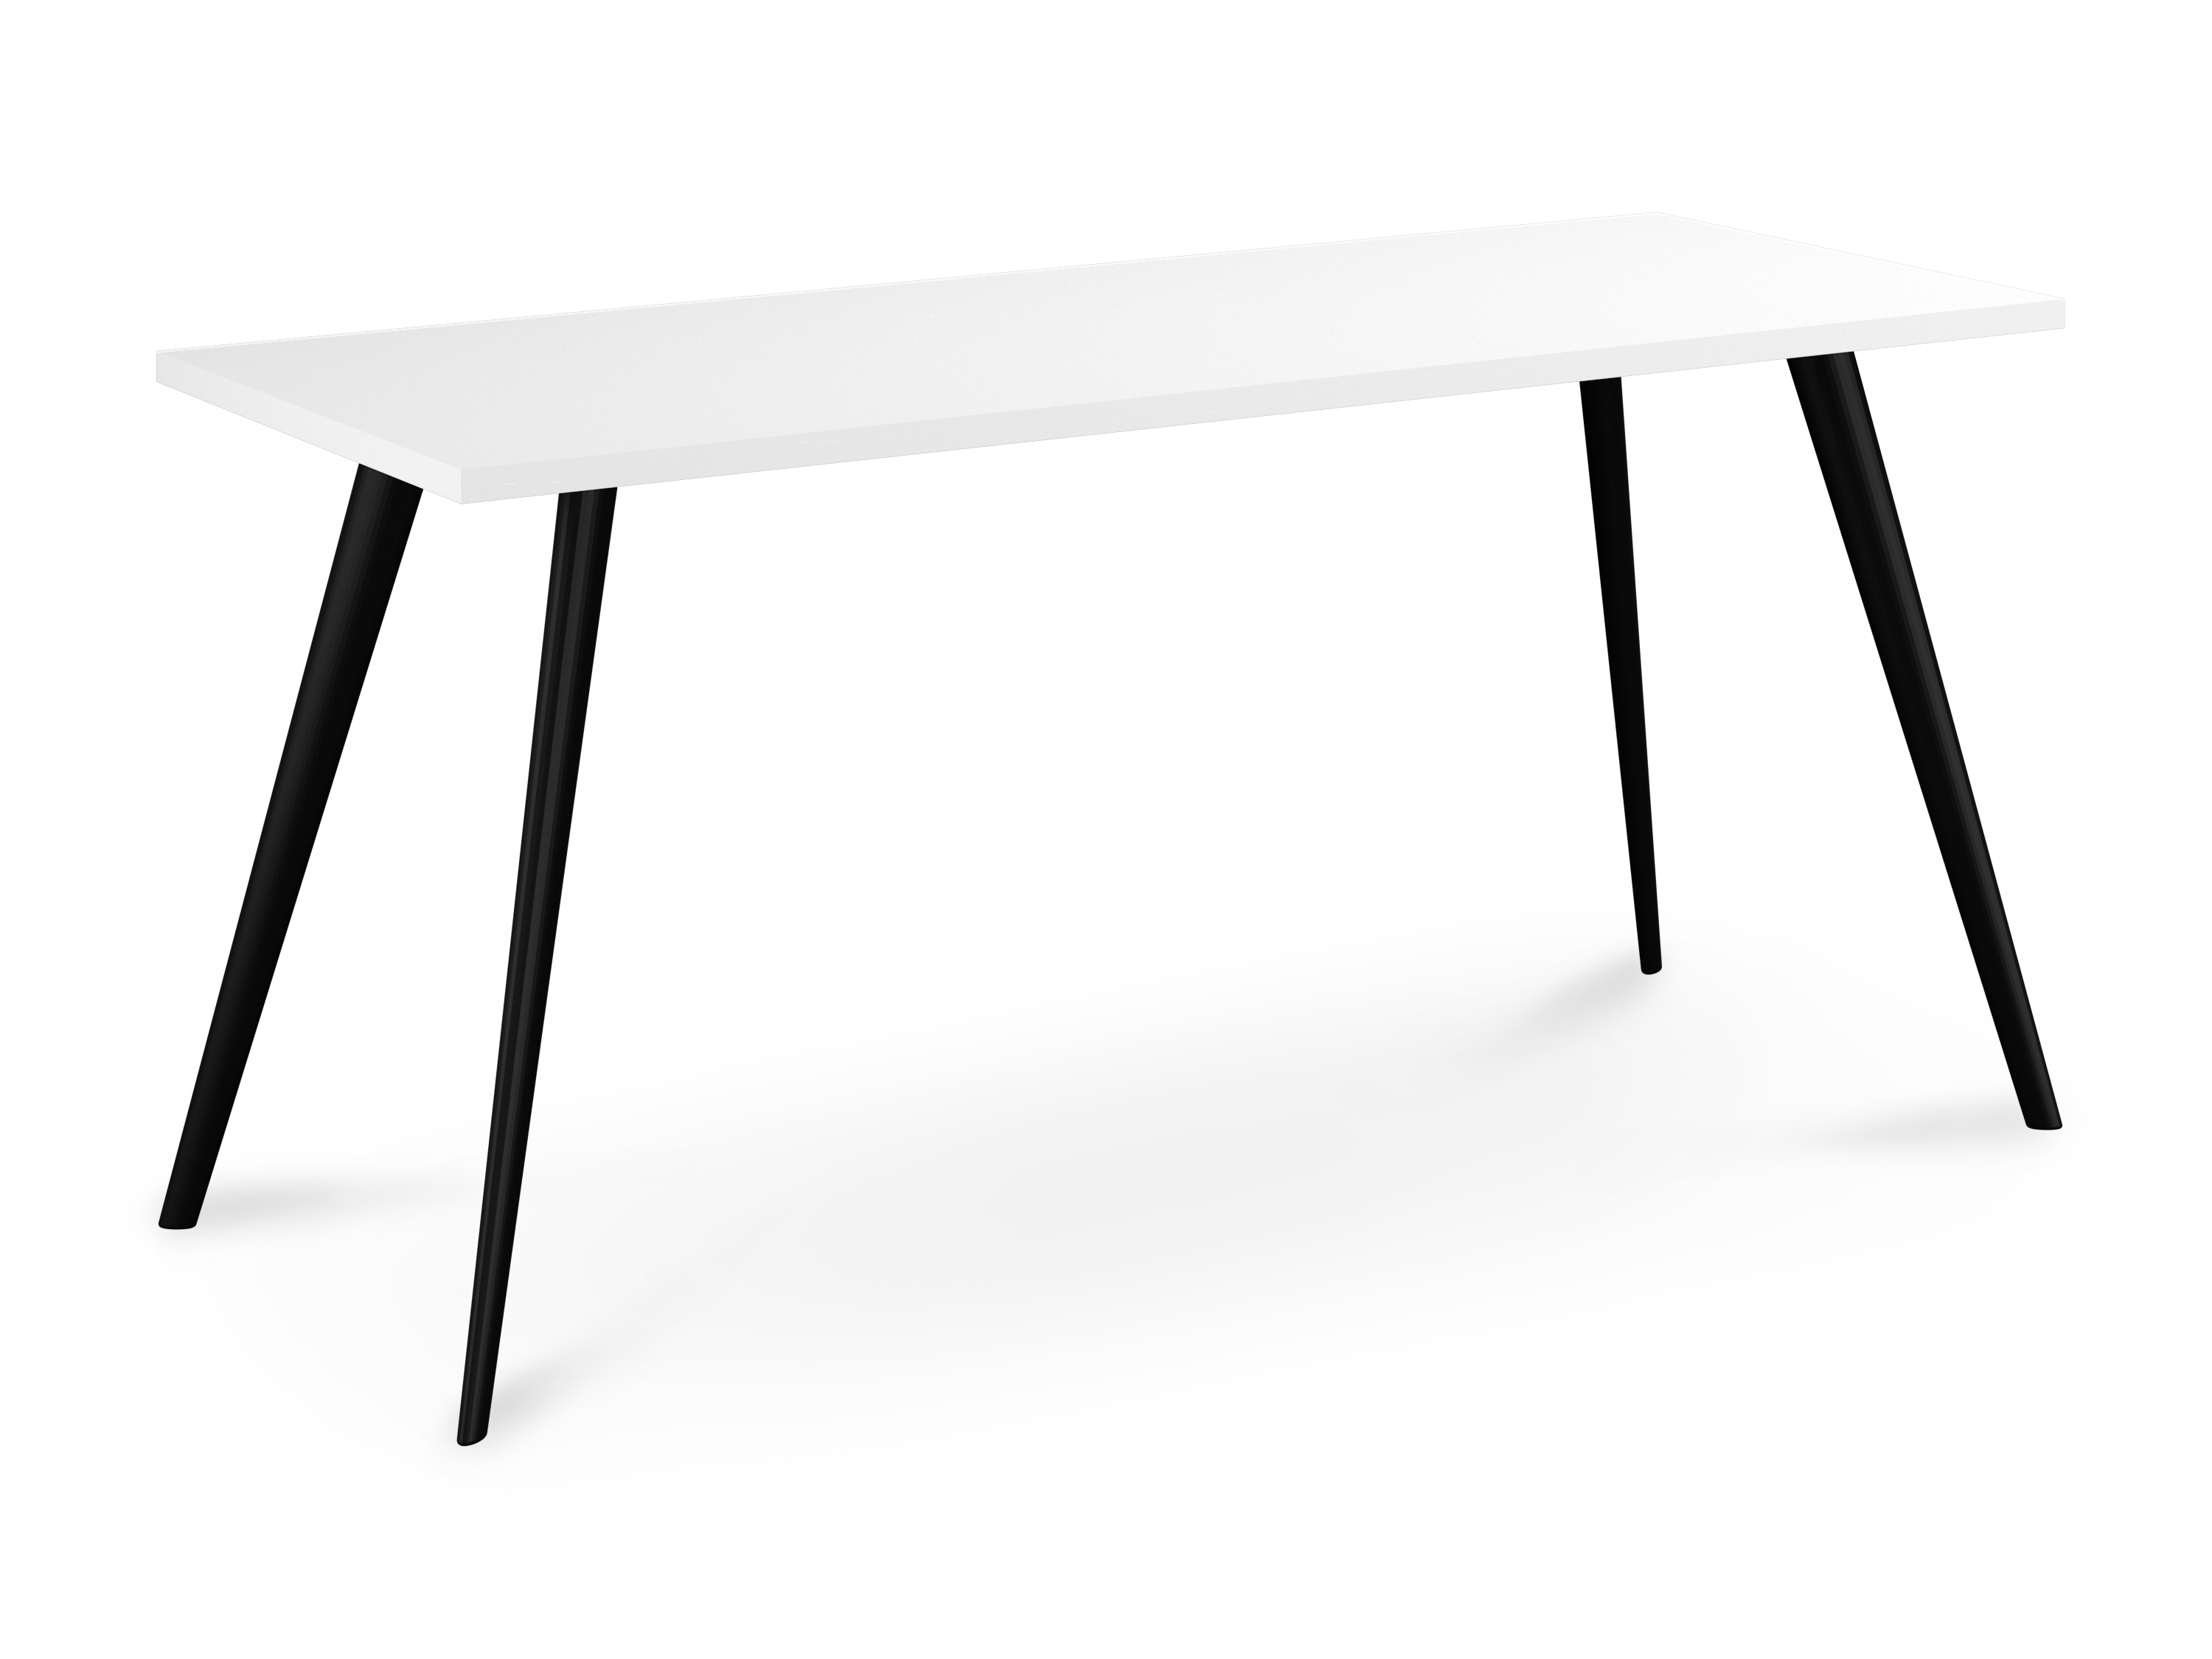 WS - Air desk - Black legs, White